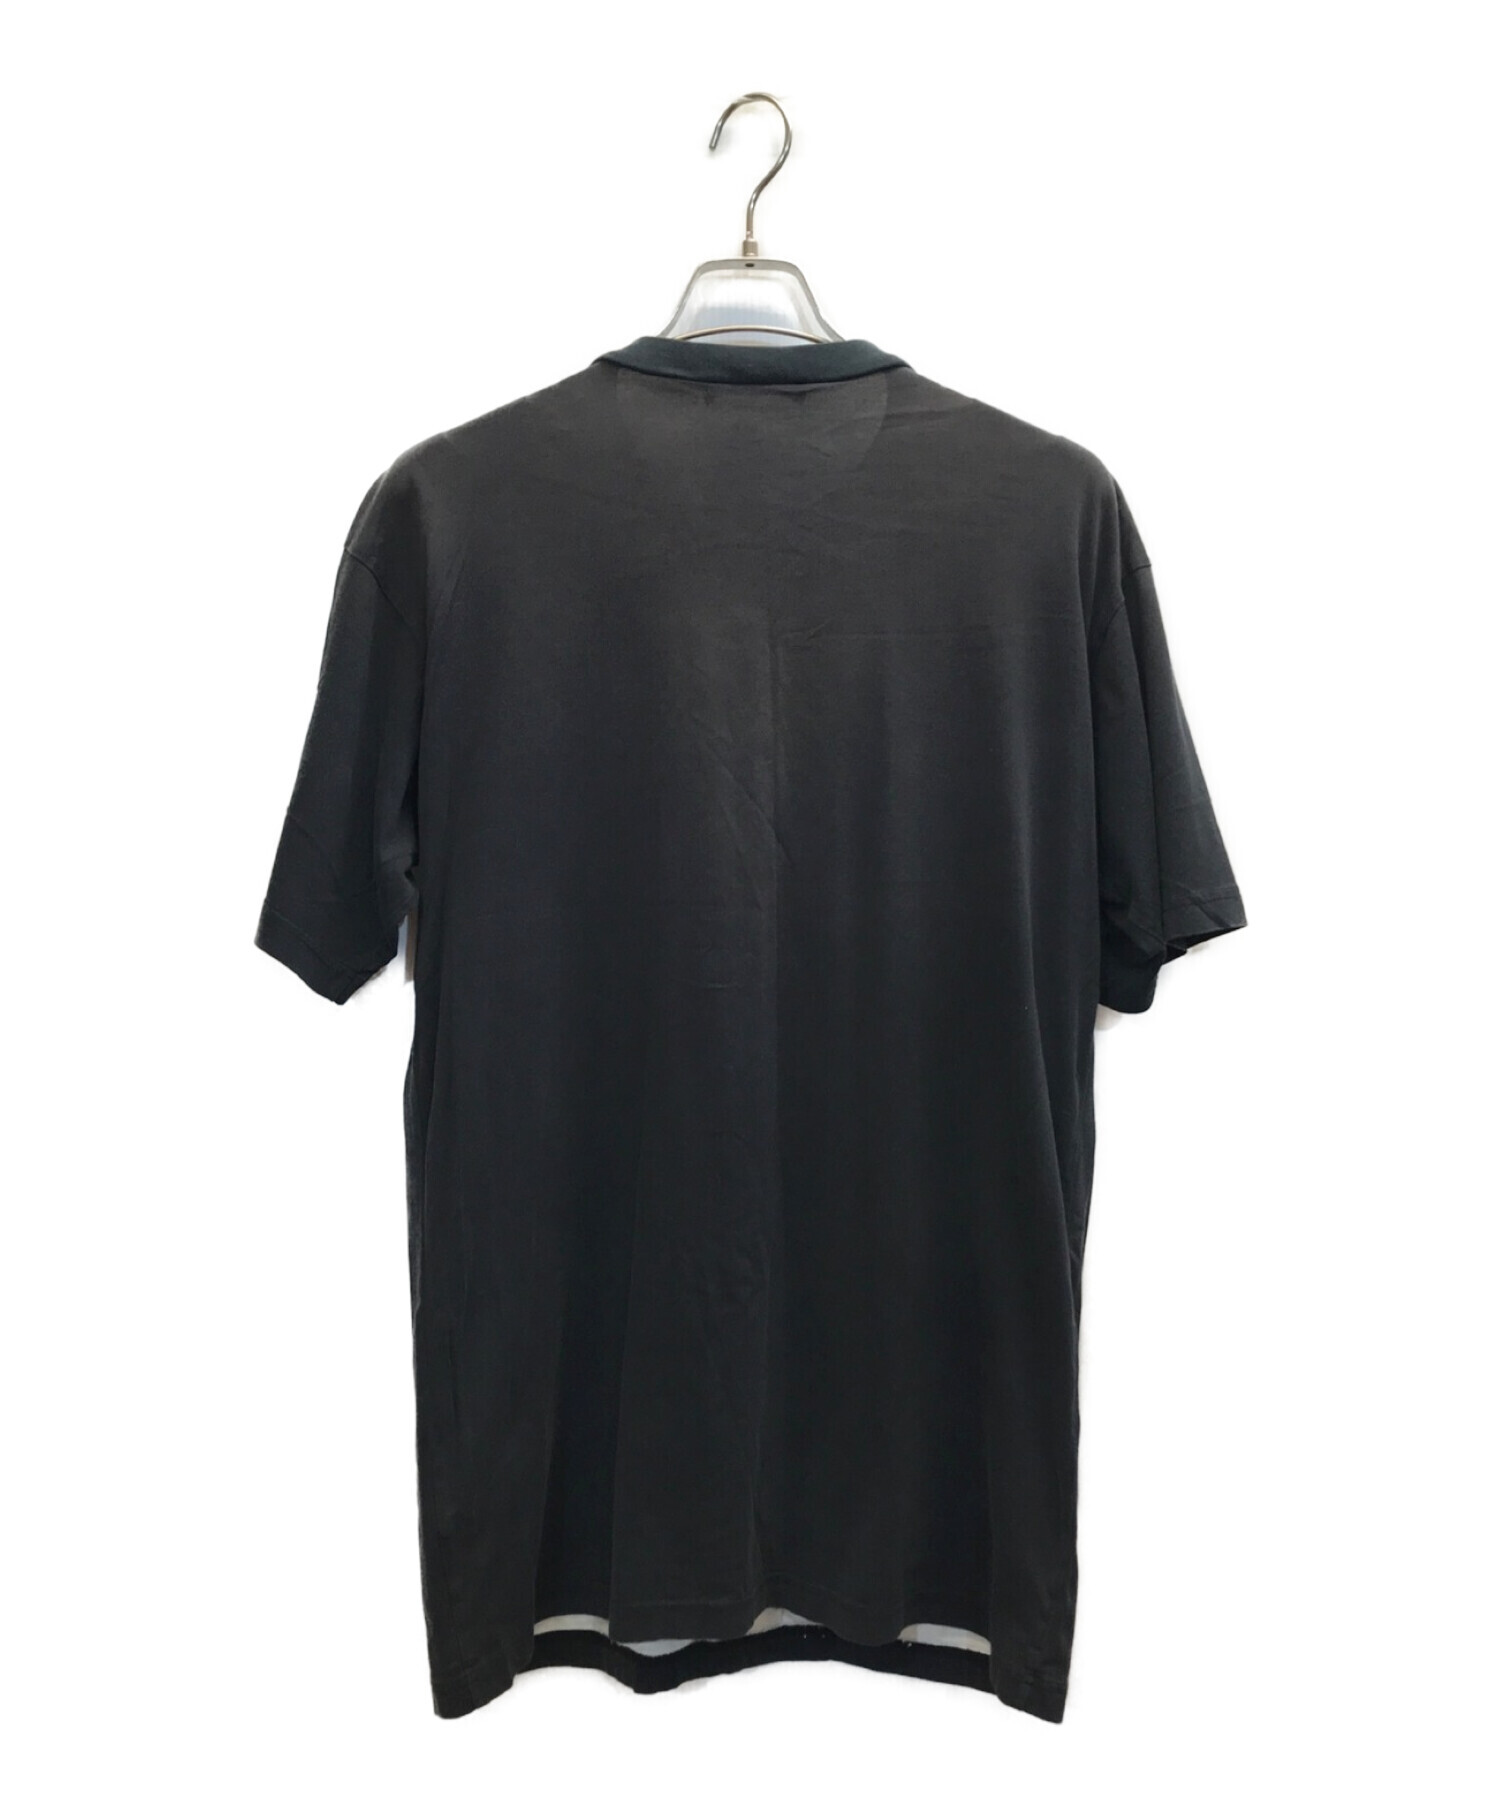 RAF SIMONS (ラフシモンズ) 03SS消費者期カッティングTシャツ ブラック サイズ:48